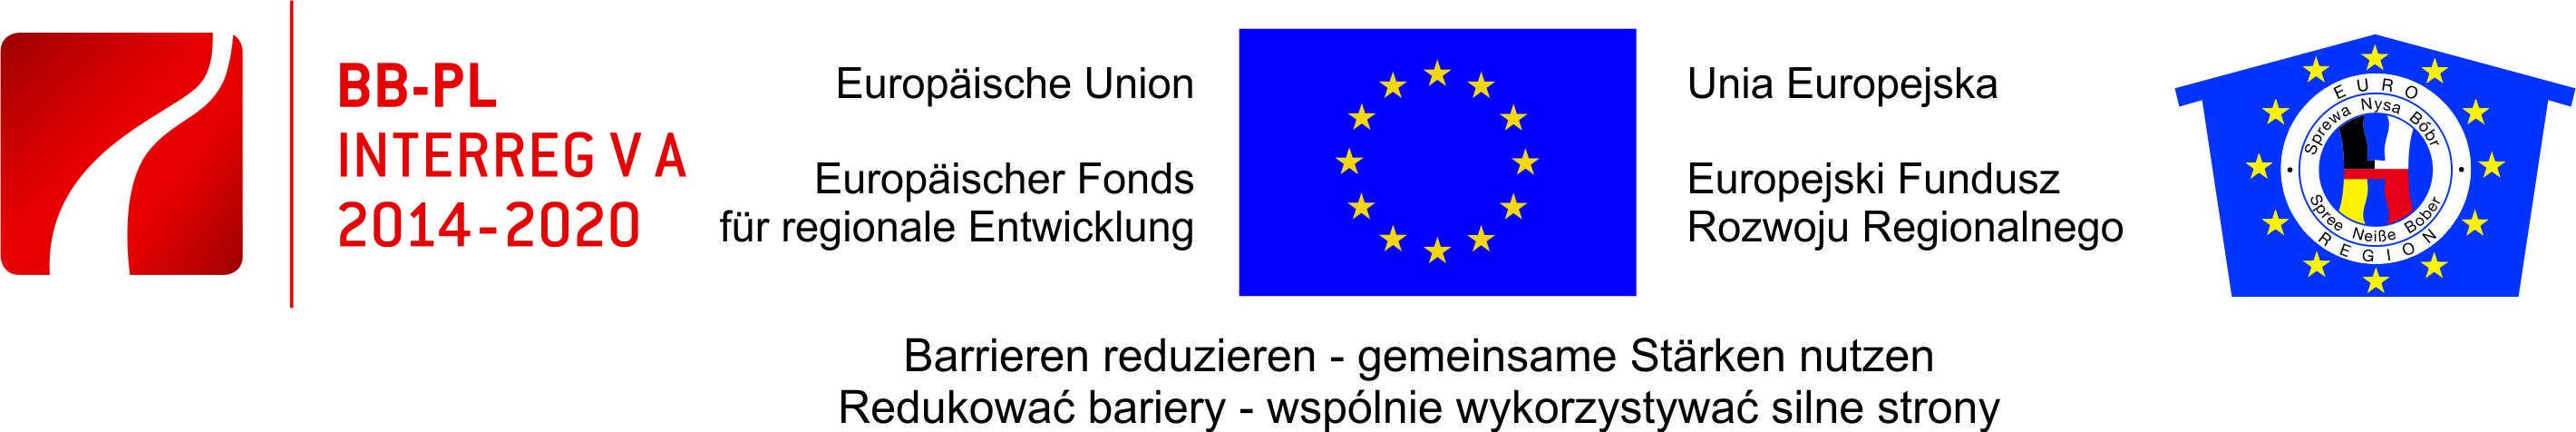 Slogan der Euroregion